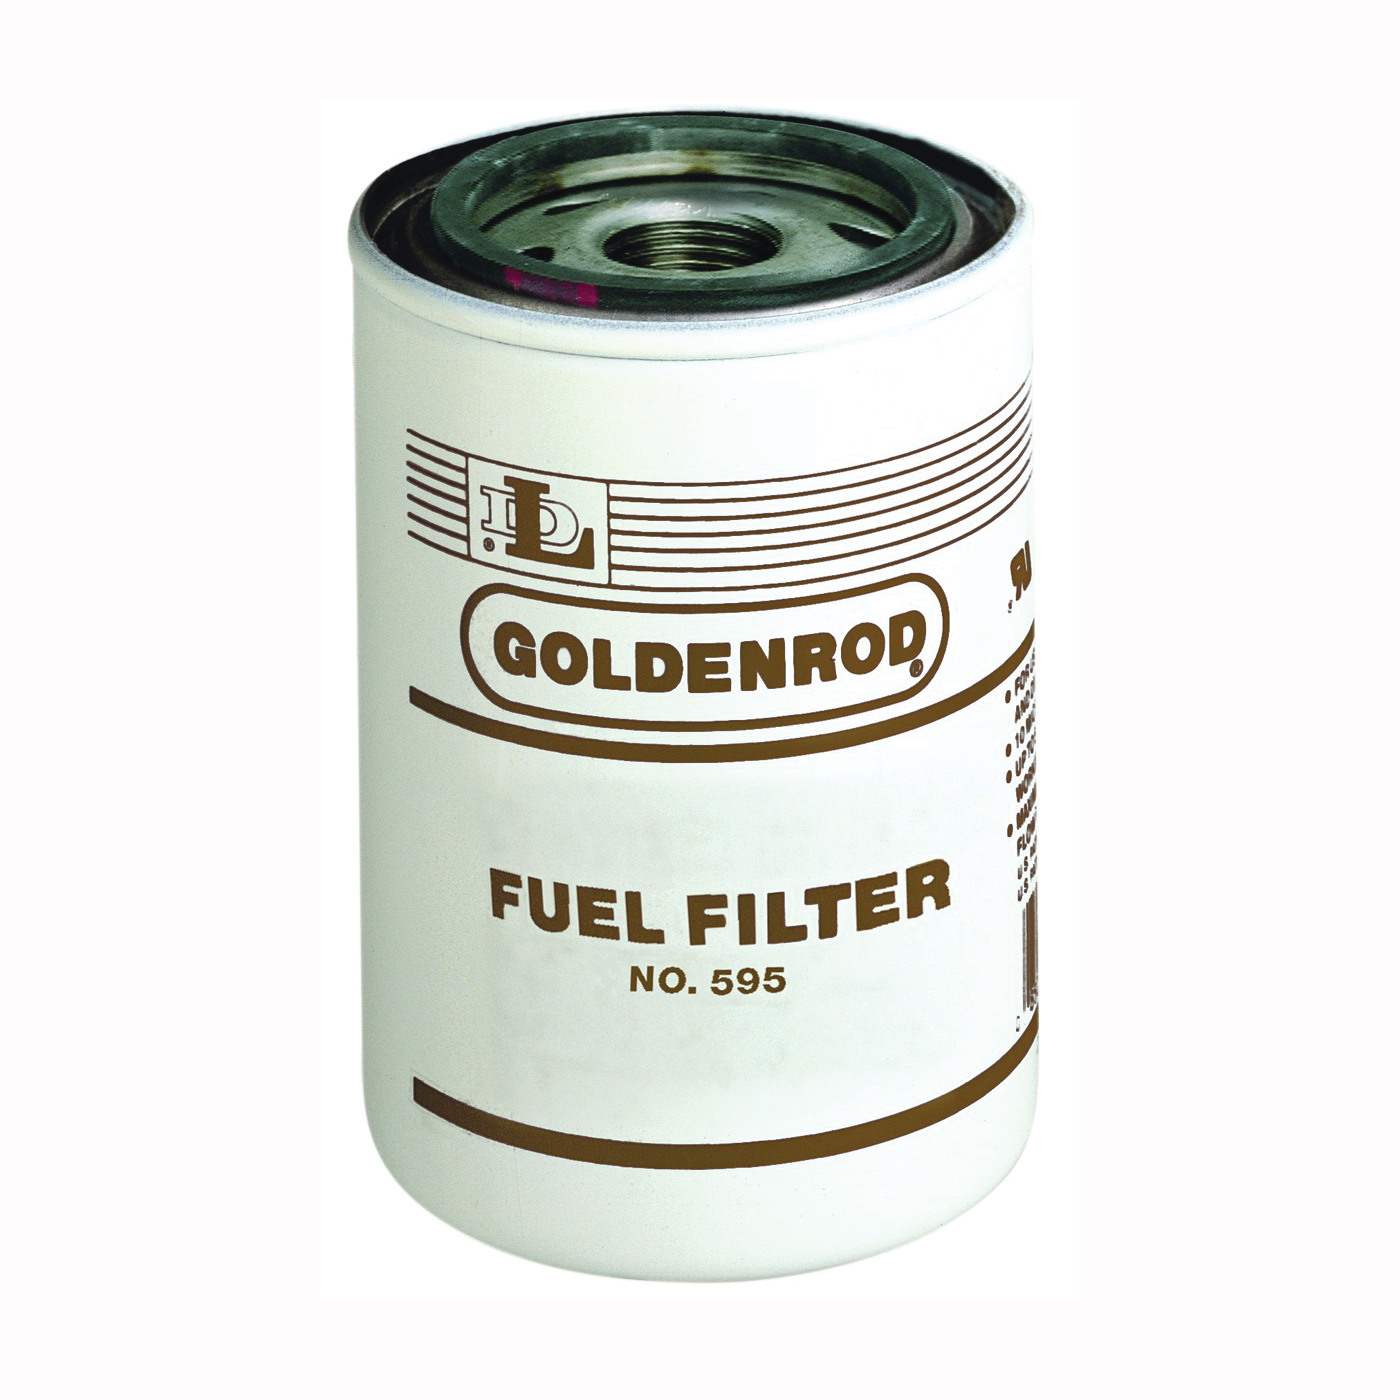 Goldenrod 595-5 Fuel Filter, For: 595 Model 10 micron Fuel Filter